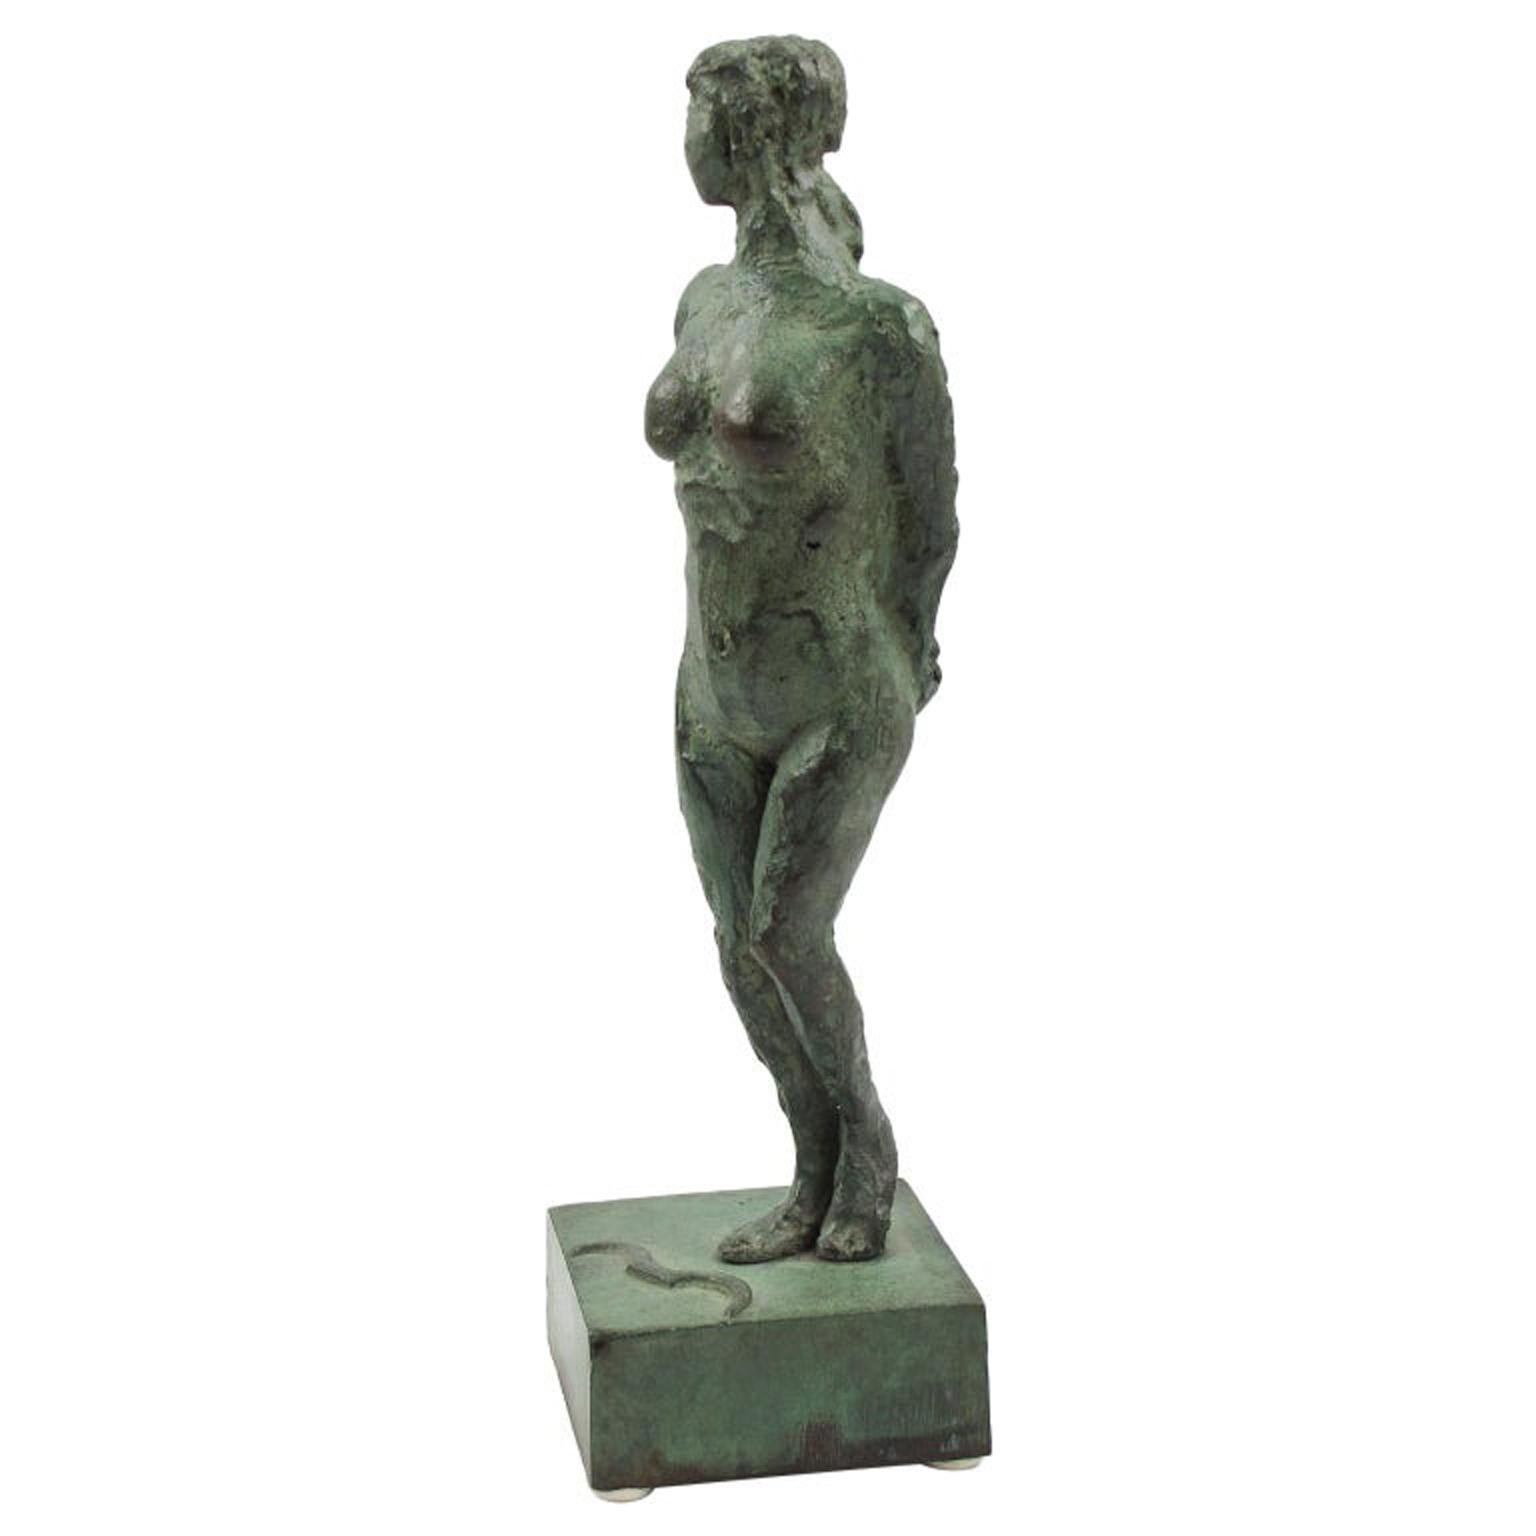 Cette étonnante figurine en bronze de style Art déco français présente une interprétation libre stylisée d'Artemis ou de Diane chasseresse. La statue de femme nue présente un motif texturé fait à la main, les deux bras dans le dos, dans sa patine